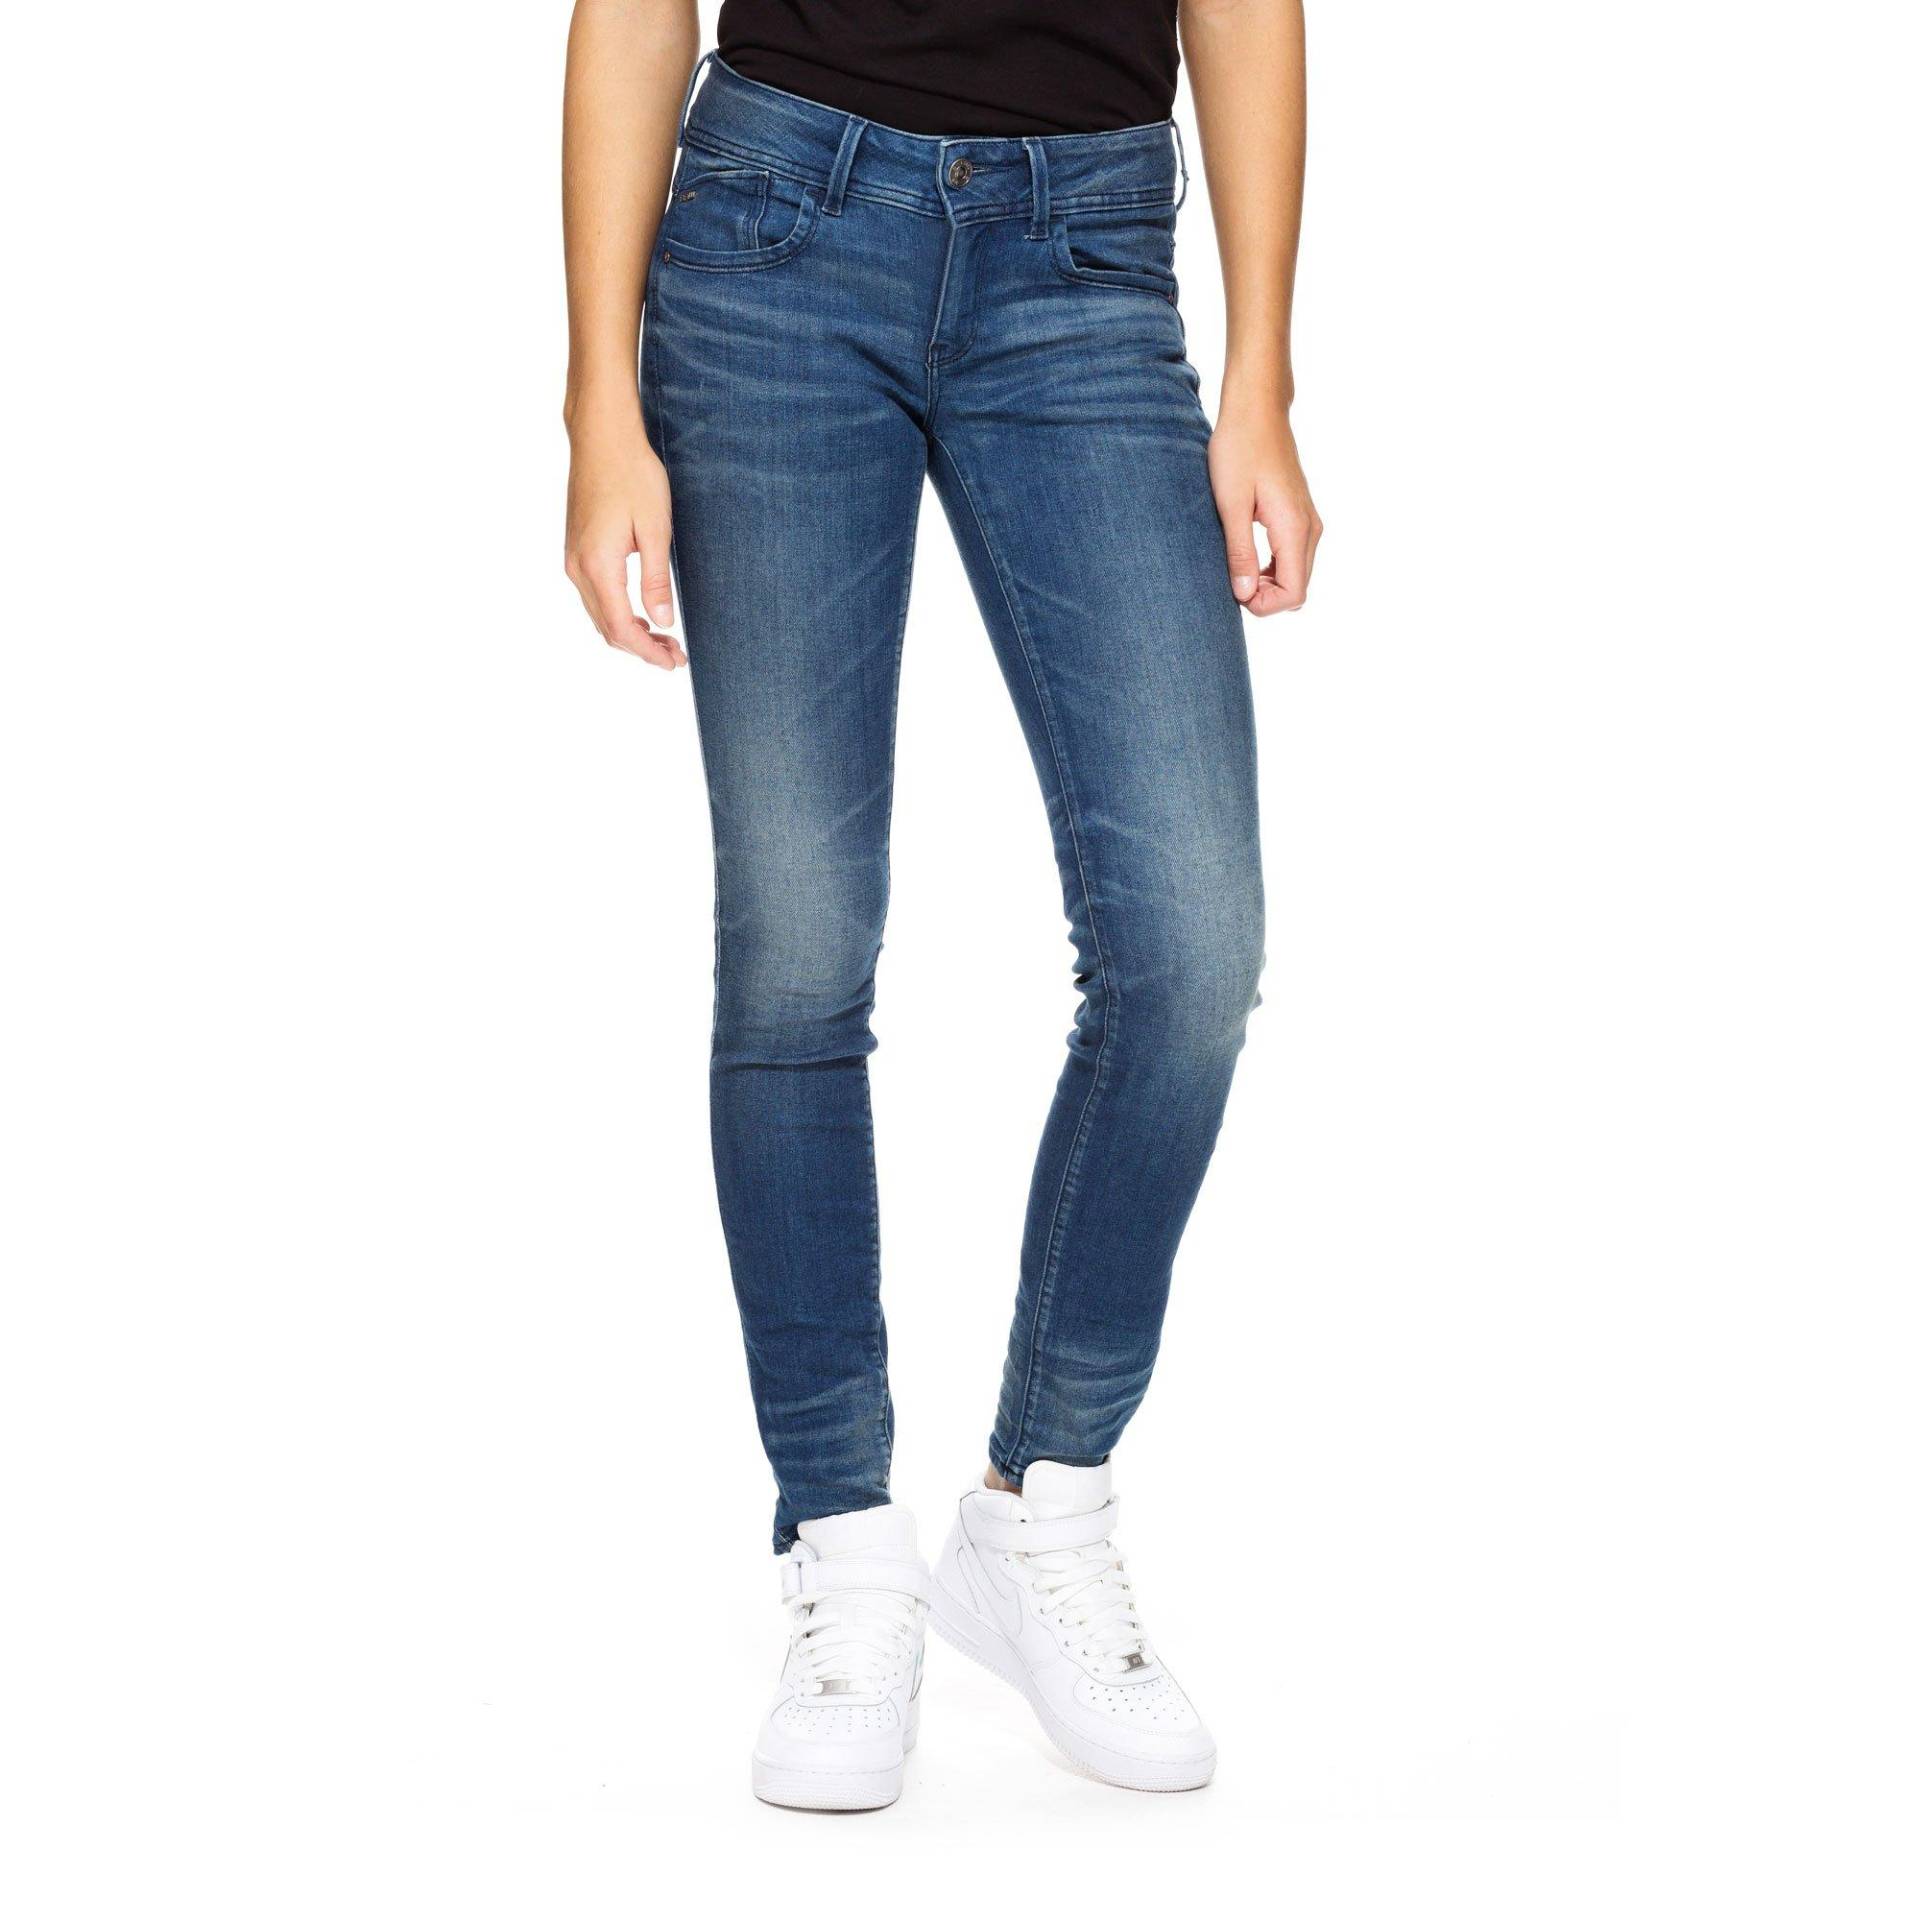 Jeans, Skinny Fit Damen Blau Denim L32/W30 von G-STAR